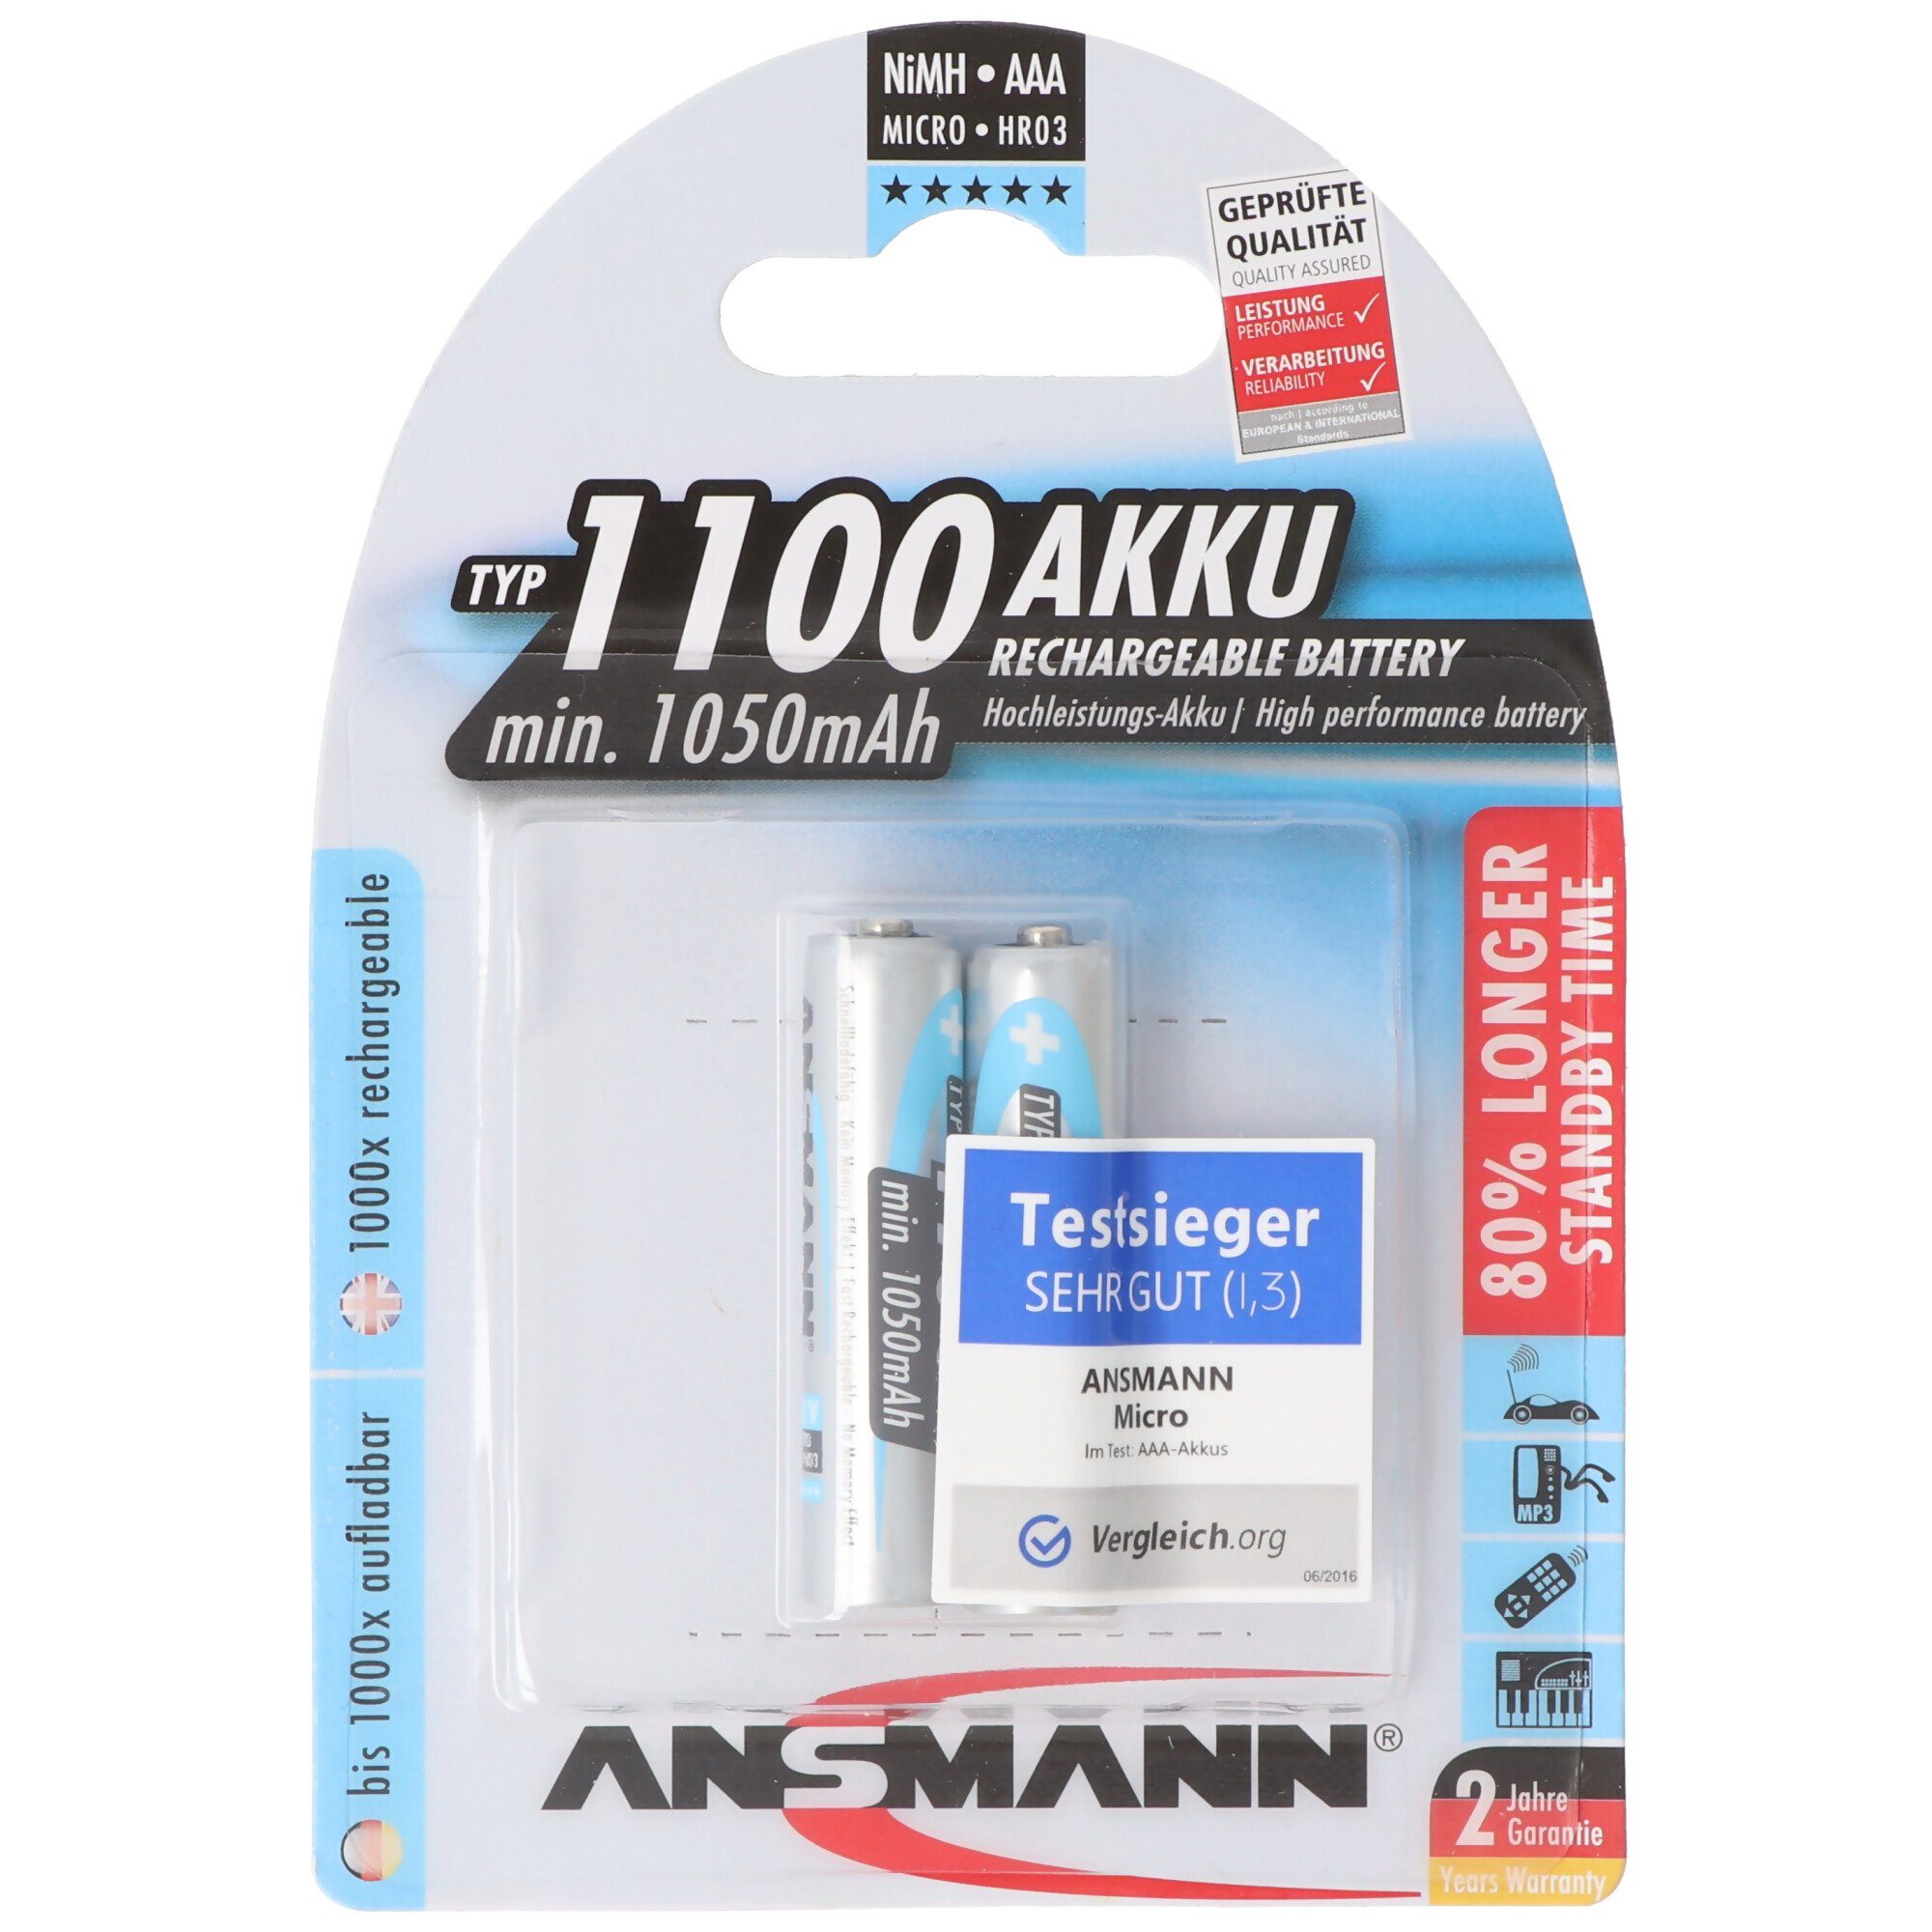 Blister 2er NiMH-Akku ANSMANN® Typ Akku V) 1050mAh Ansmann 1100 Micro (1,2 1050 mAh